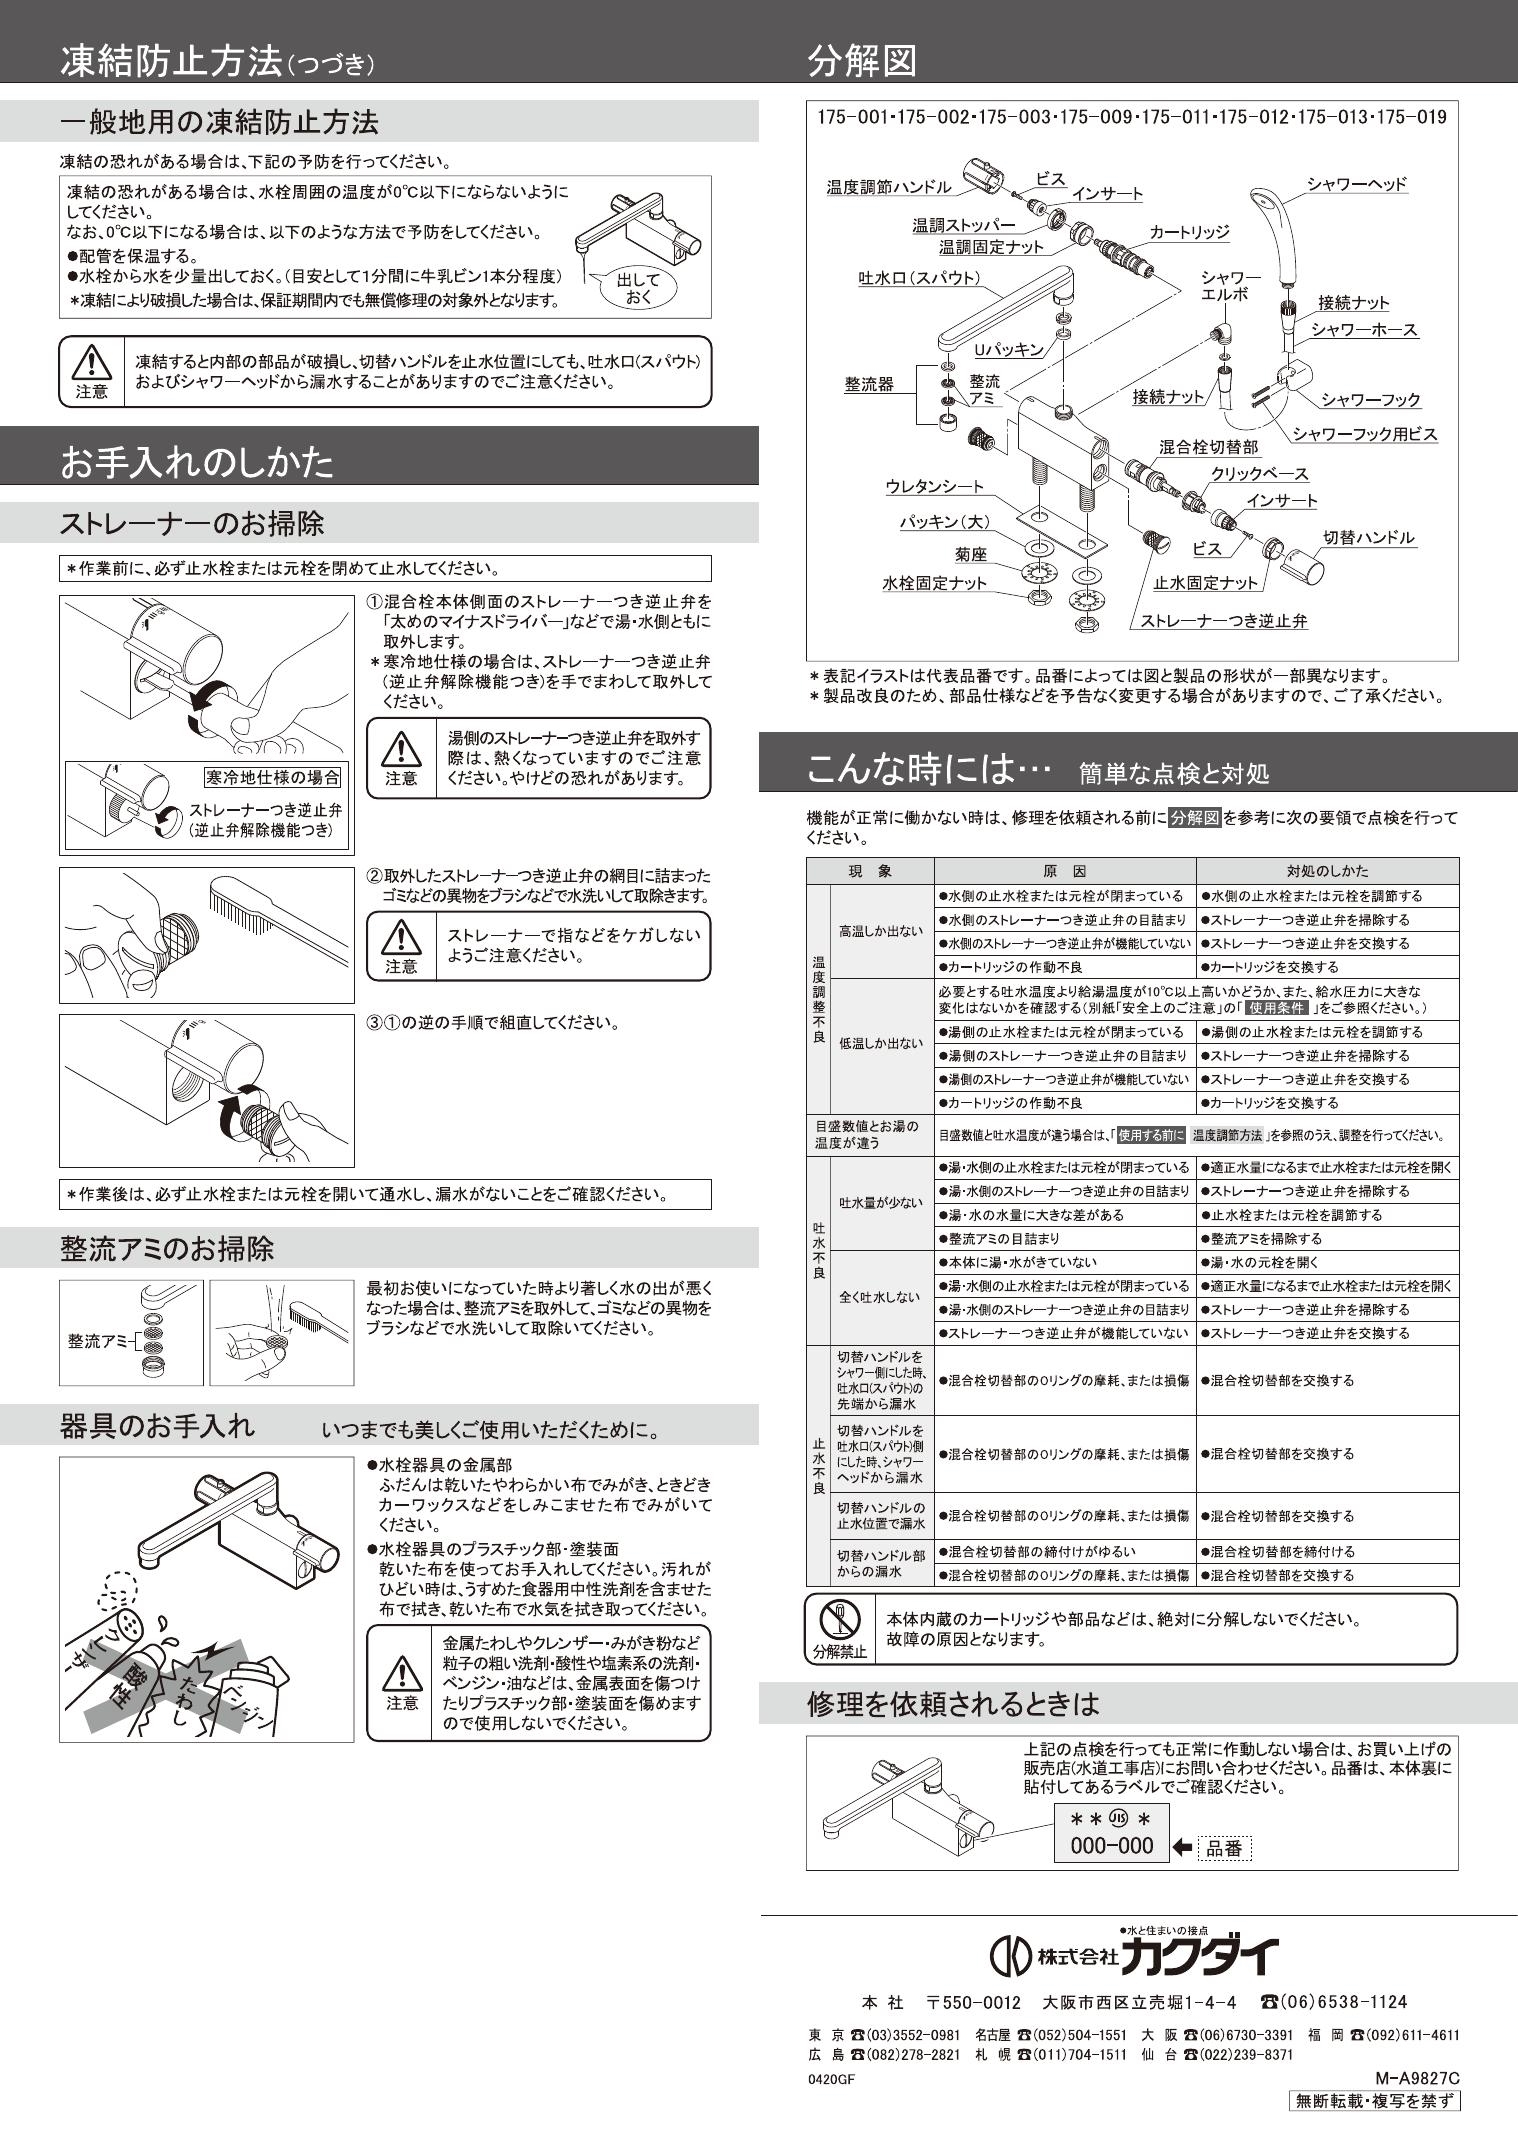 半額SALE☆ 工具屋 まいど カクダイ KAKUDAI 175-013 サーモスタットシャワー混合栓デッキ